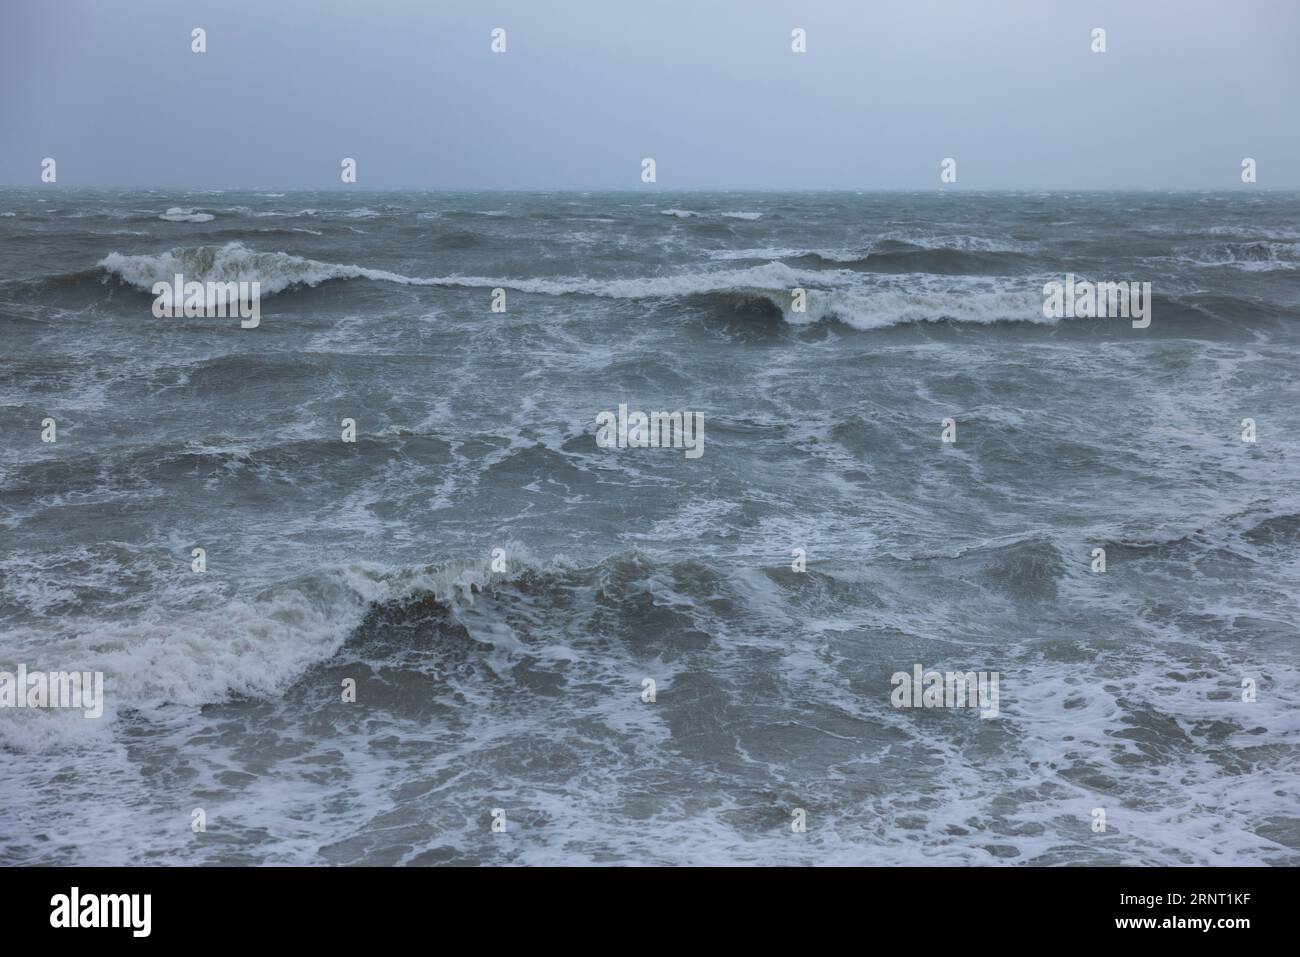 Mare tempestoso, mare schiumoso in tempesta con alte onde sulla Manica, Portbail, Cotentin, Manche, Normandia, Francia Foto Stock